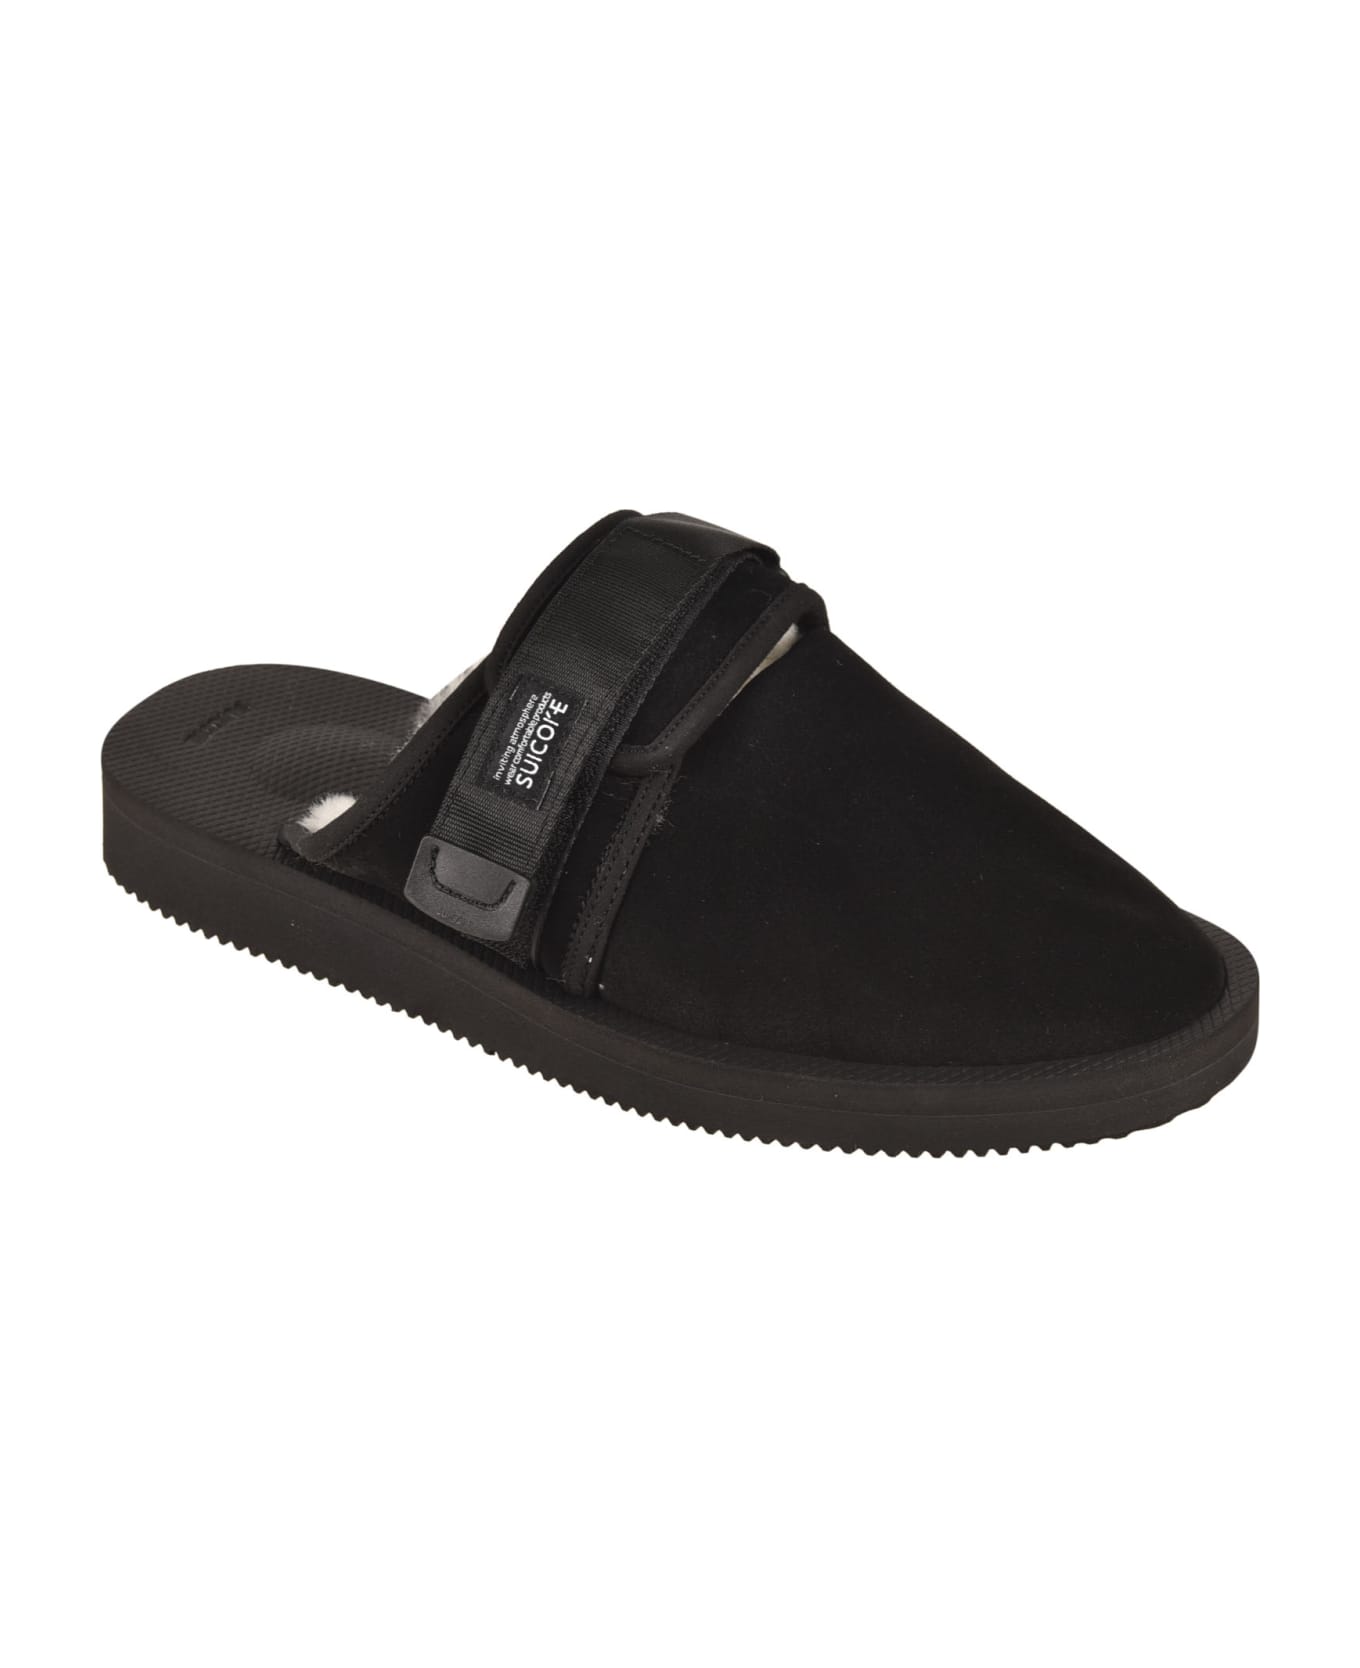 SUICOKE Fur Applique Side Strap Sandals - Black